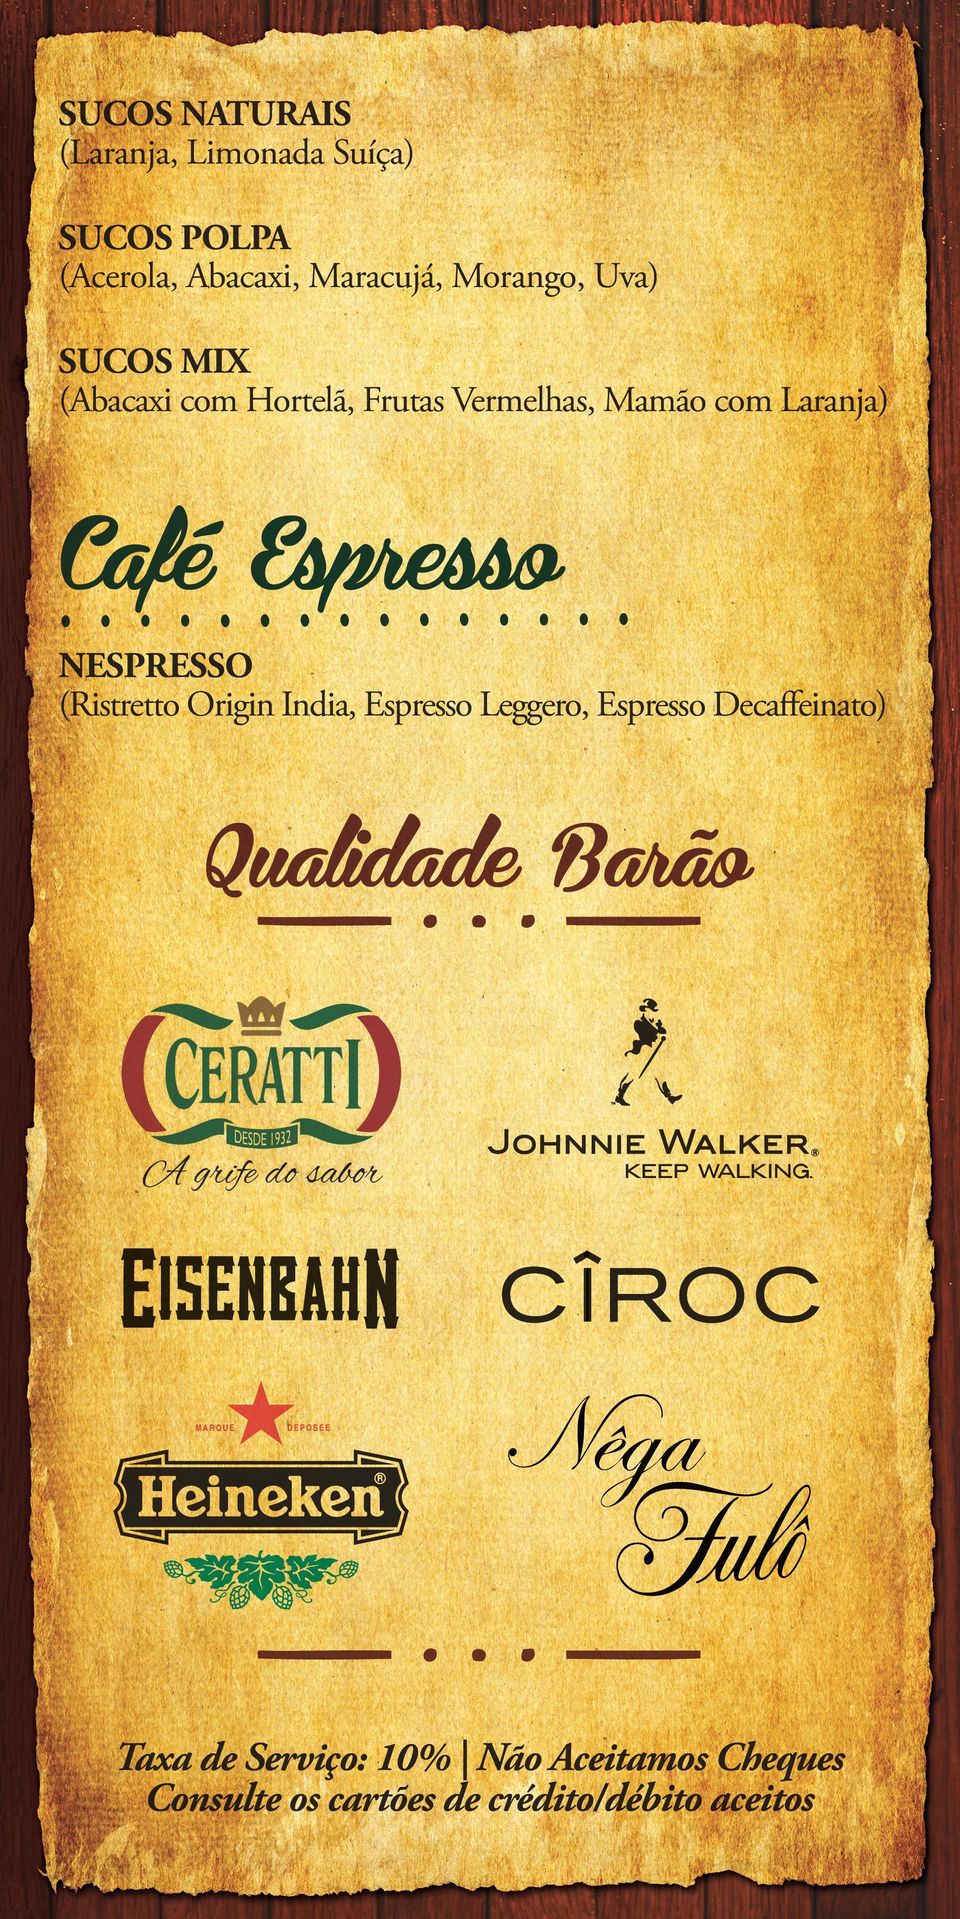 Espresso NESPRESSO (Ristretto Origin India, Espresso Leggero, Espresso Decaffeinato)